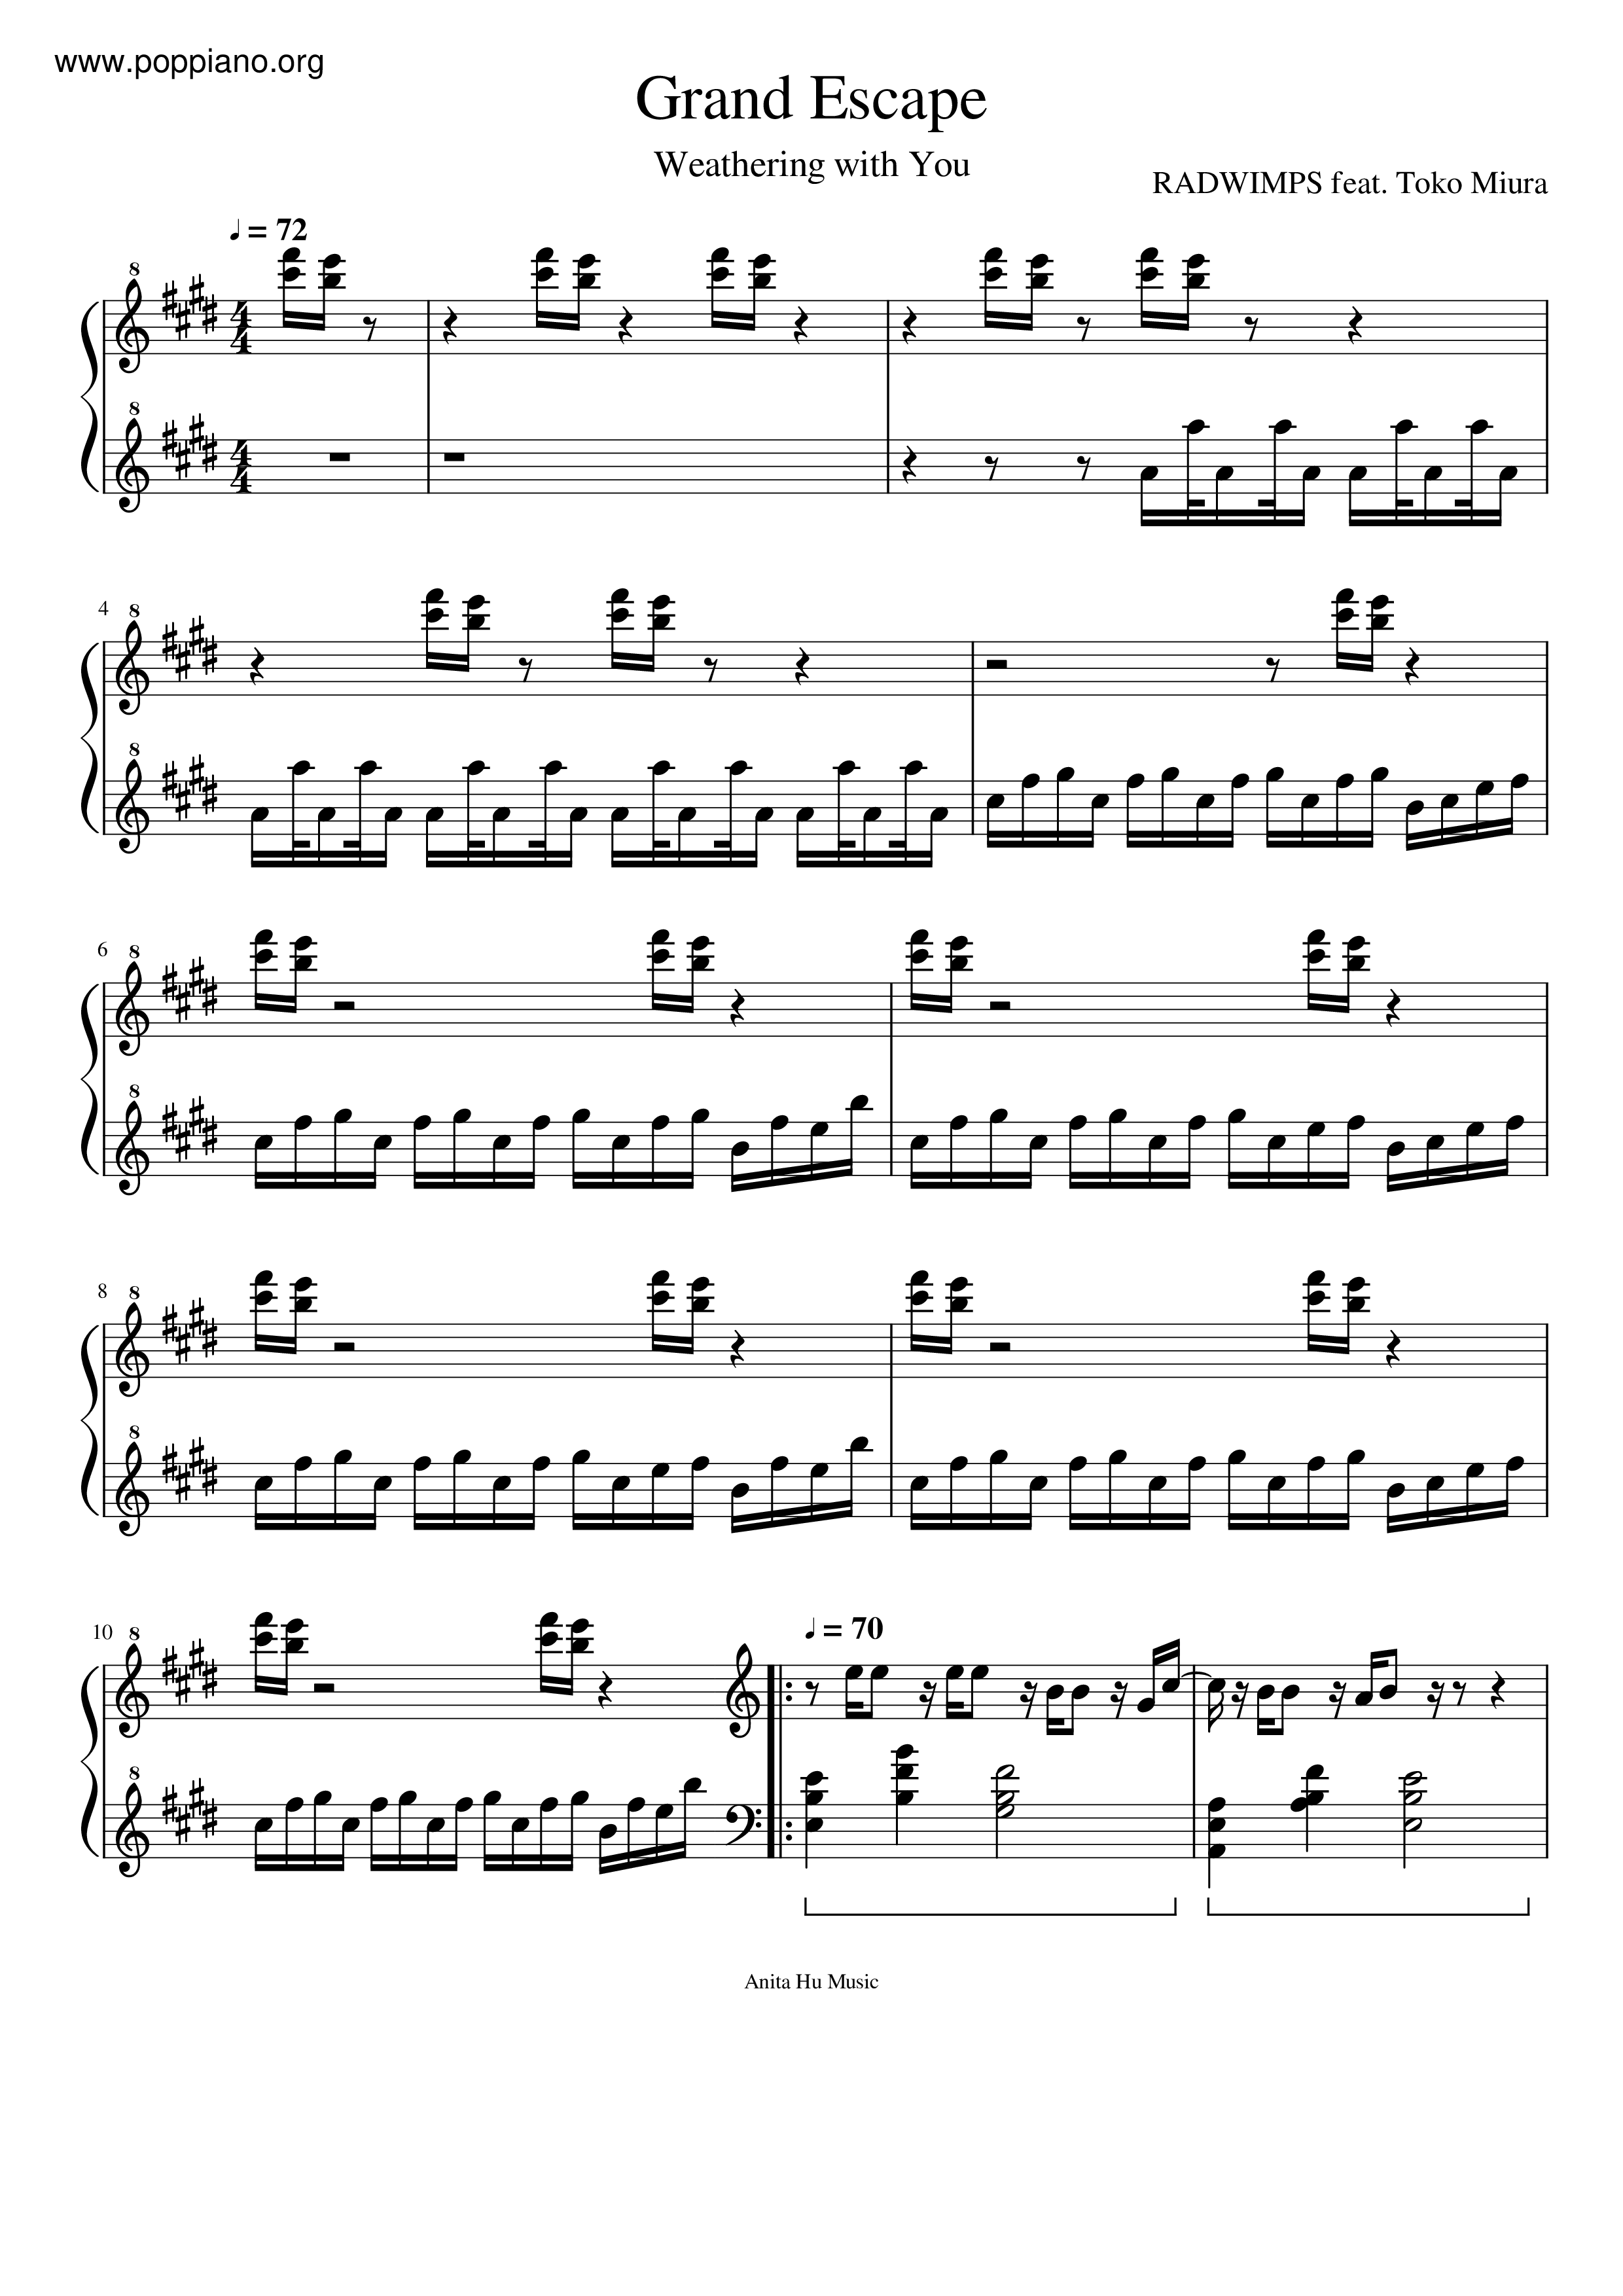 ☆ 天气之子 - Grand Escape | Sheet Music | Piano Score Free Pdf Download | Hk  Pop Piano Academy